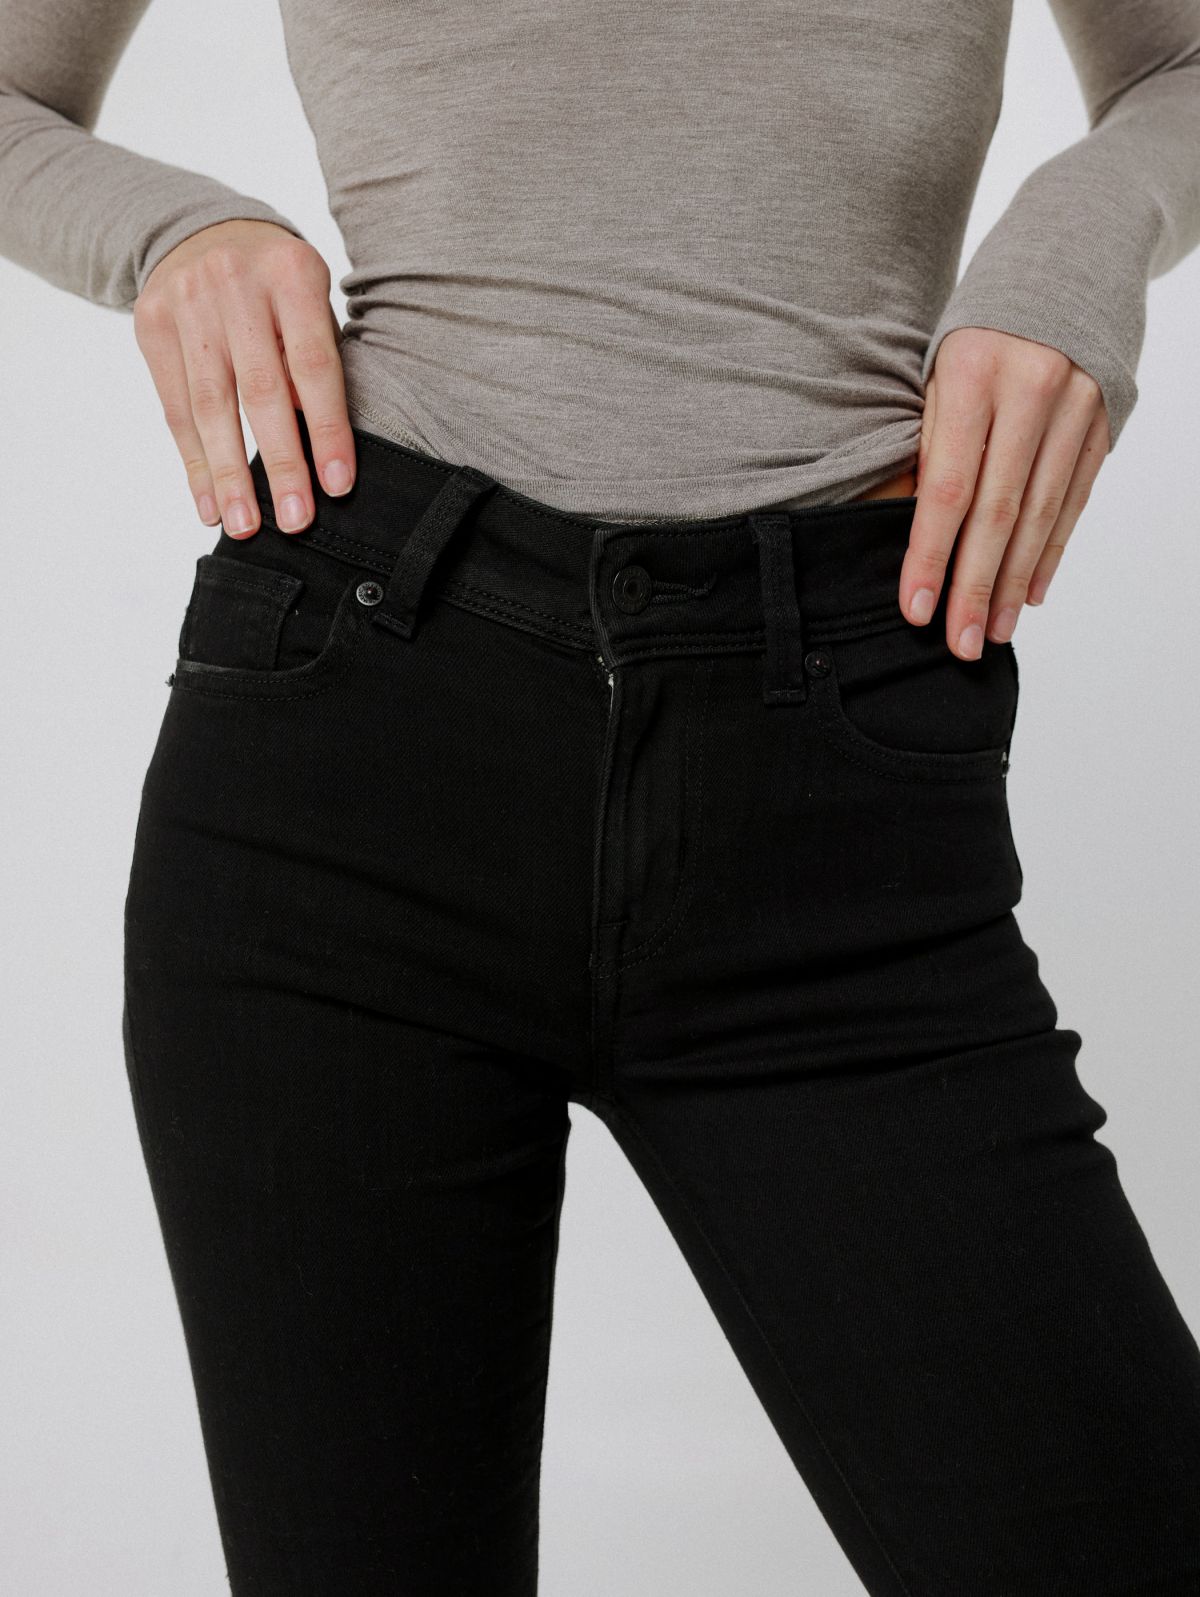  מכנסי ג'ינס בגזרת KICK BOOT של AMERICAN EAGLE